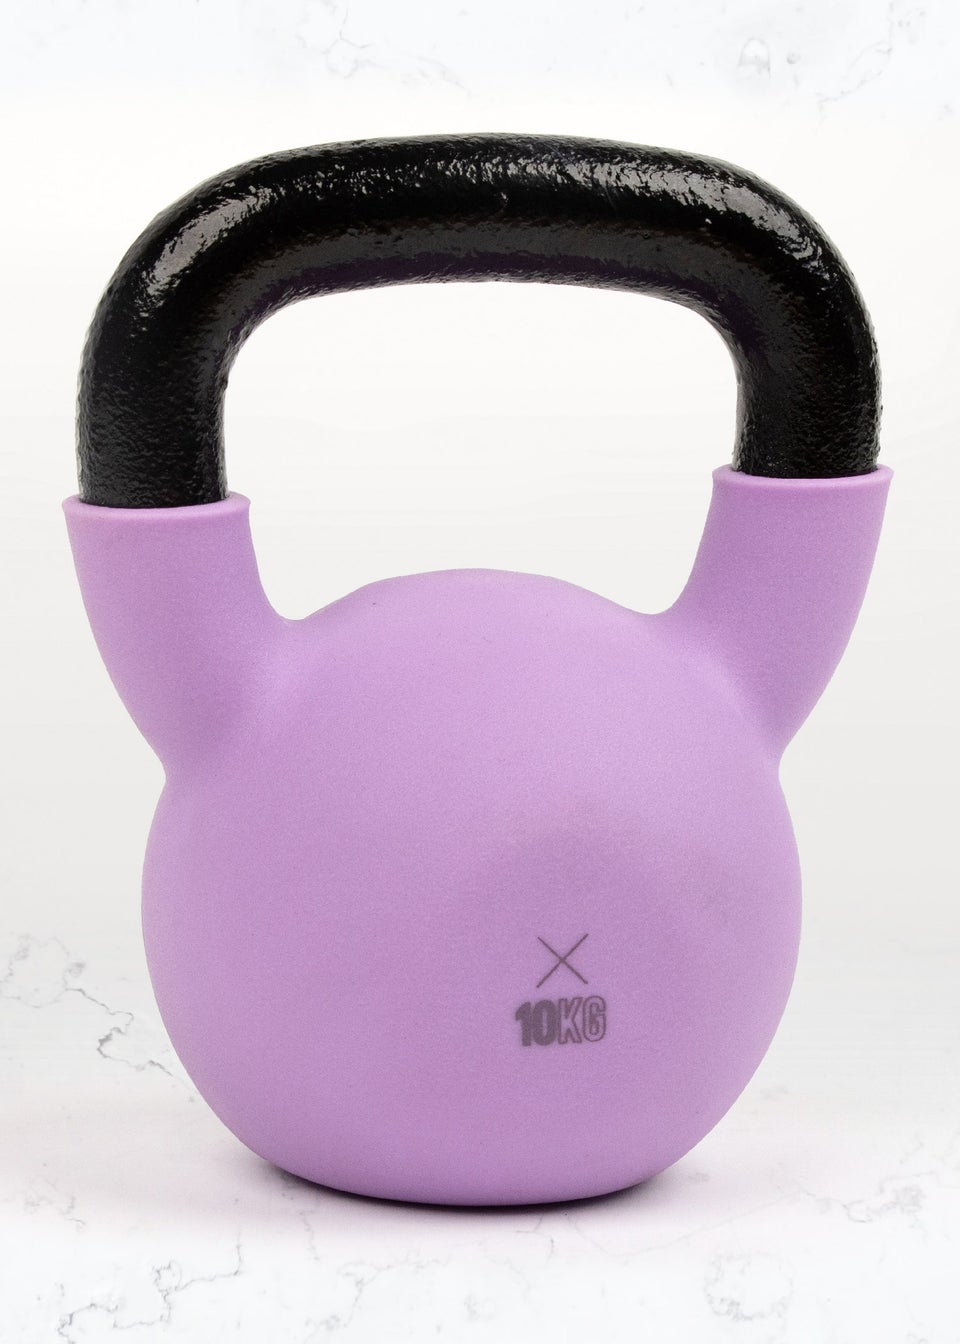 Phoenix Fitness Kettle Bell (10Kg)